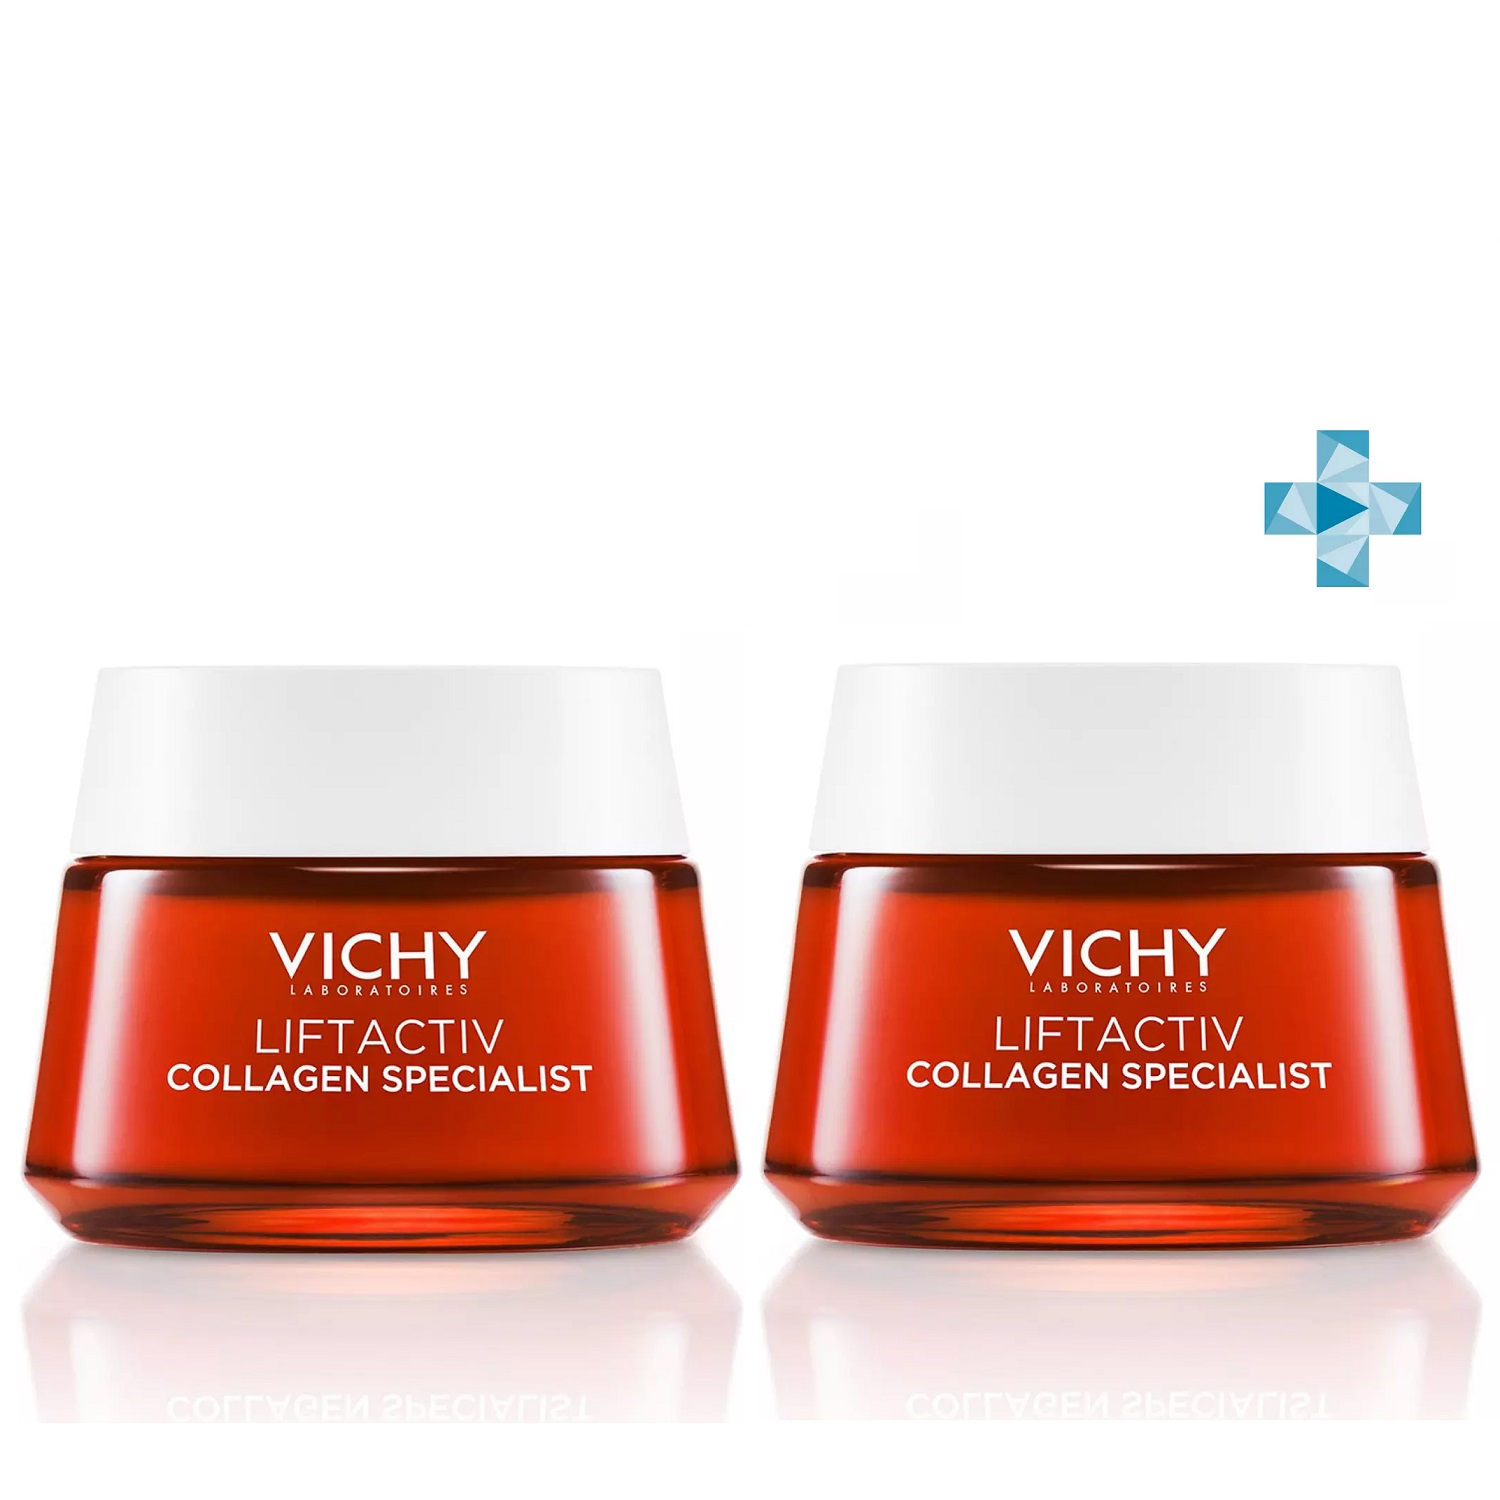 Vichy Комплект Антивозрастной дневной крем для лица, активирующий выработку коллагена, 2 х 50 мл (Vichy, Liftactiv)